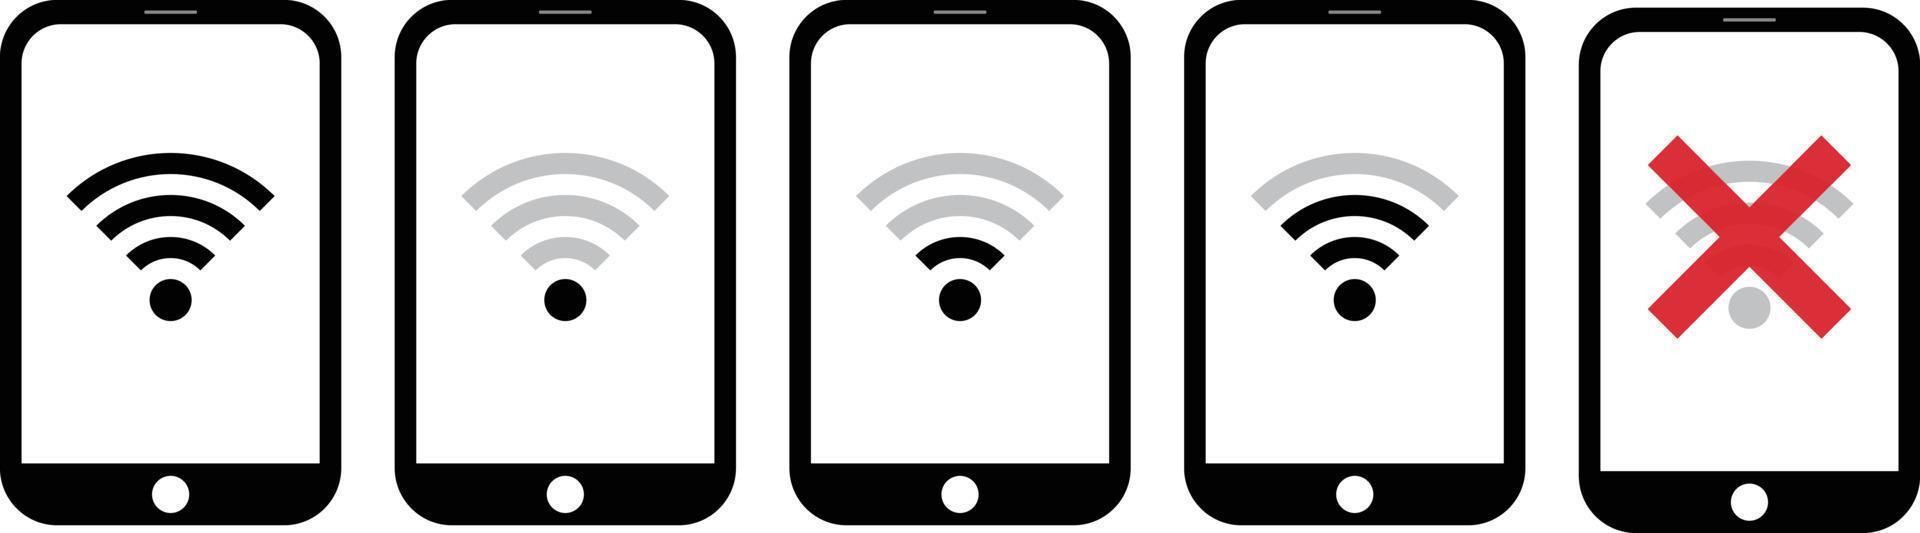 ikon uppsättning för smartphone Wi-Fi förbindelse miljö. vektor